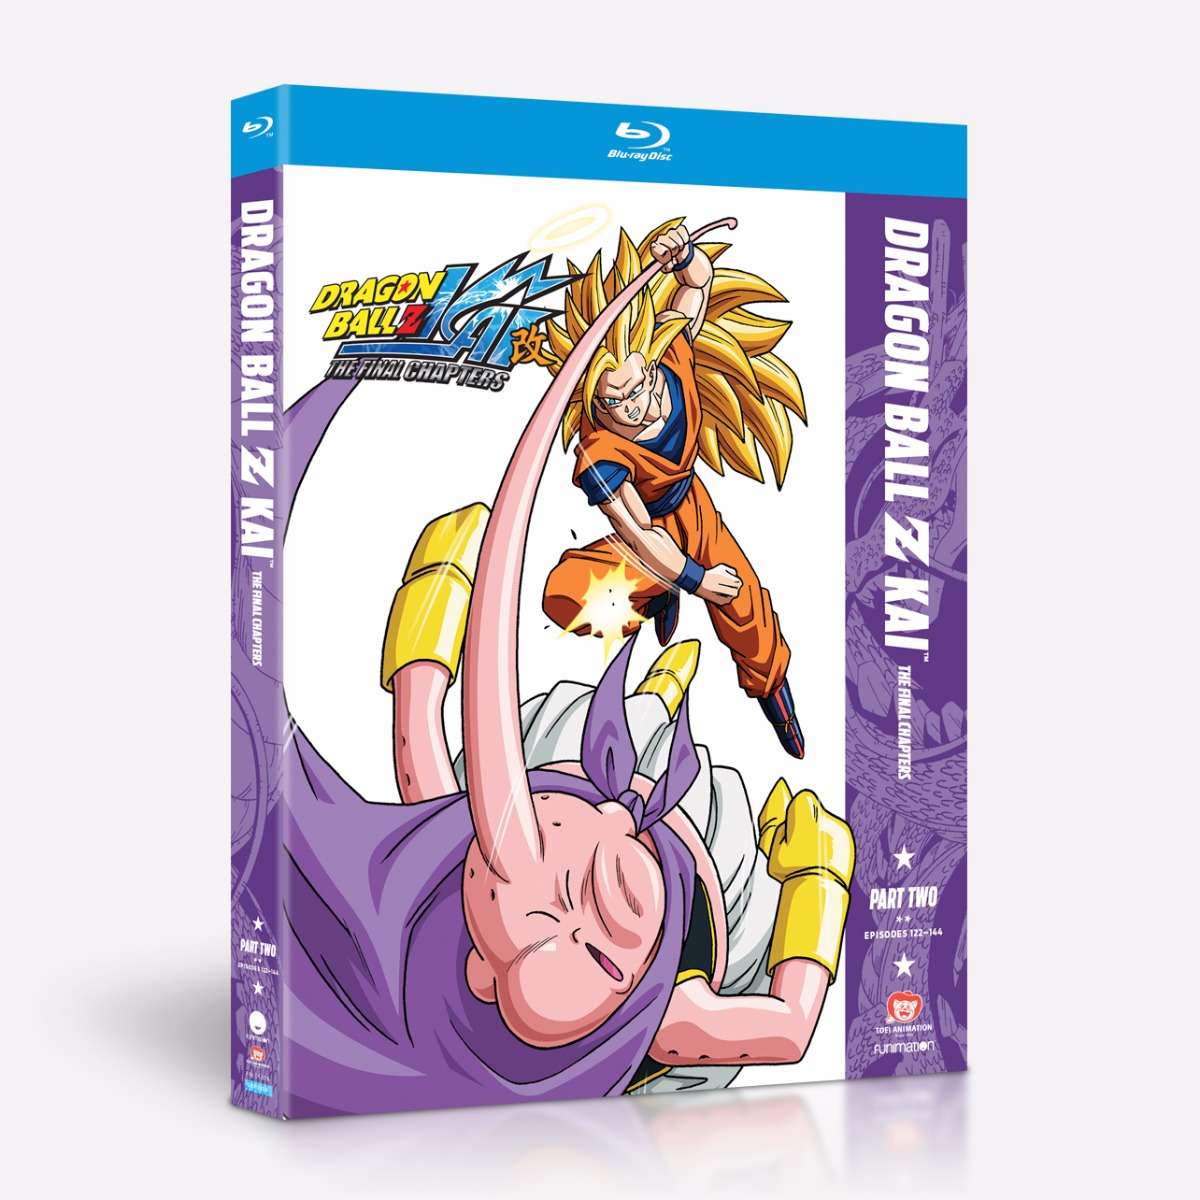 Dragon Ball Z Kai Season 2 Episodes 27-52 DVD 4 Disc Set Toei